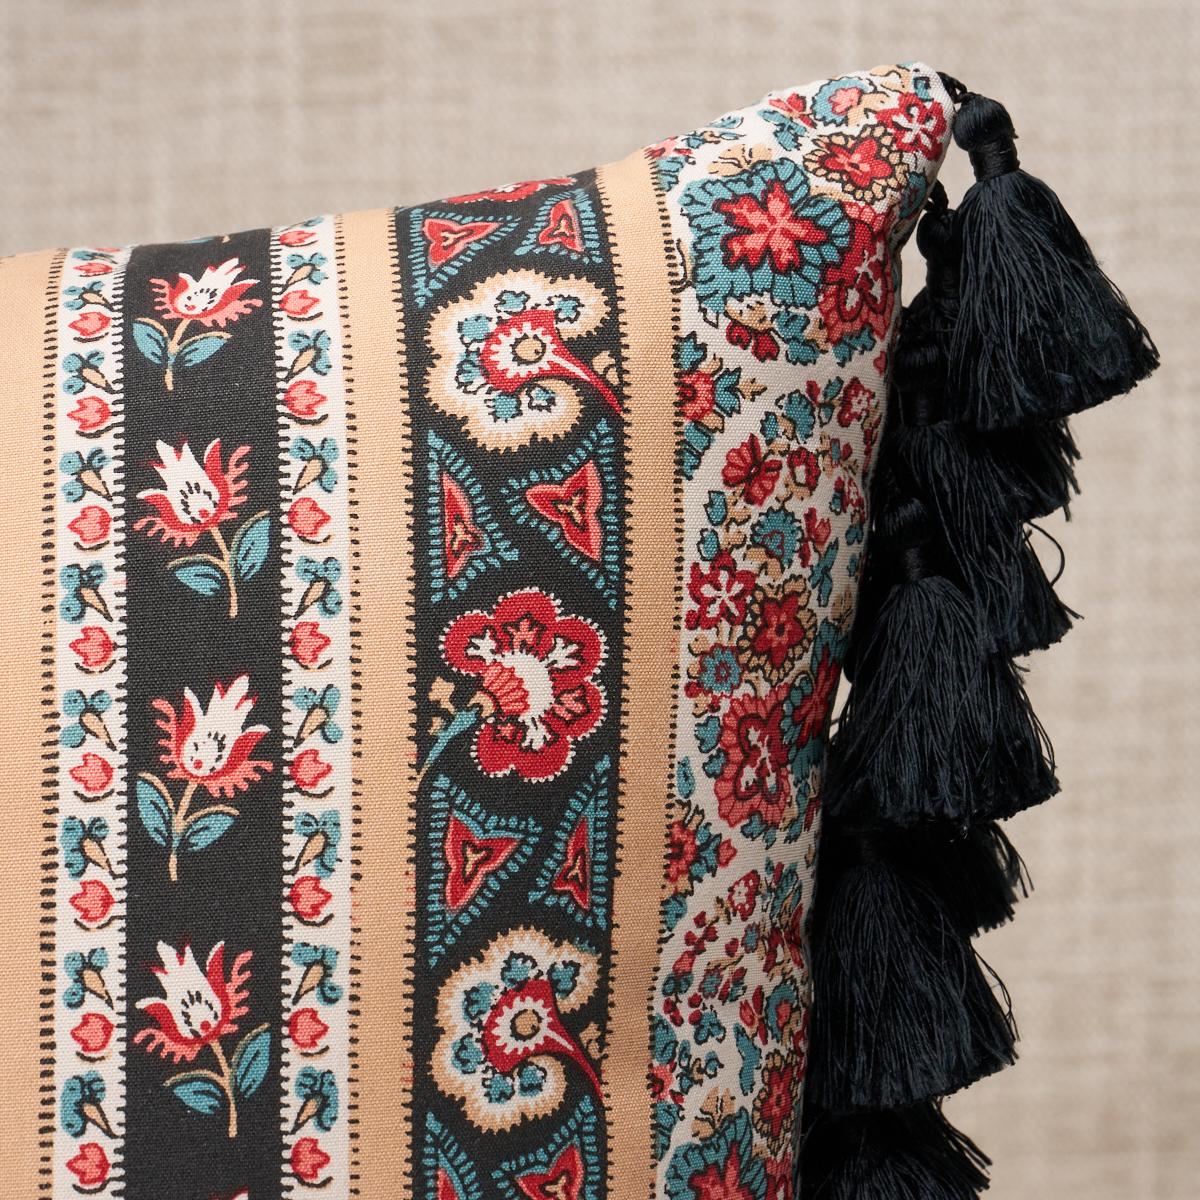 Dieses Kissen zeigt Ines Paisley mit einem Messerschnitt an der Ober- und Unterseite. Inspiriert von einem Vintage-Stoff, ist dieser wunderbare Streifen reich an Details mit komplizierten Paisleys und zarten floralen Elementen. Die Seiten des